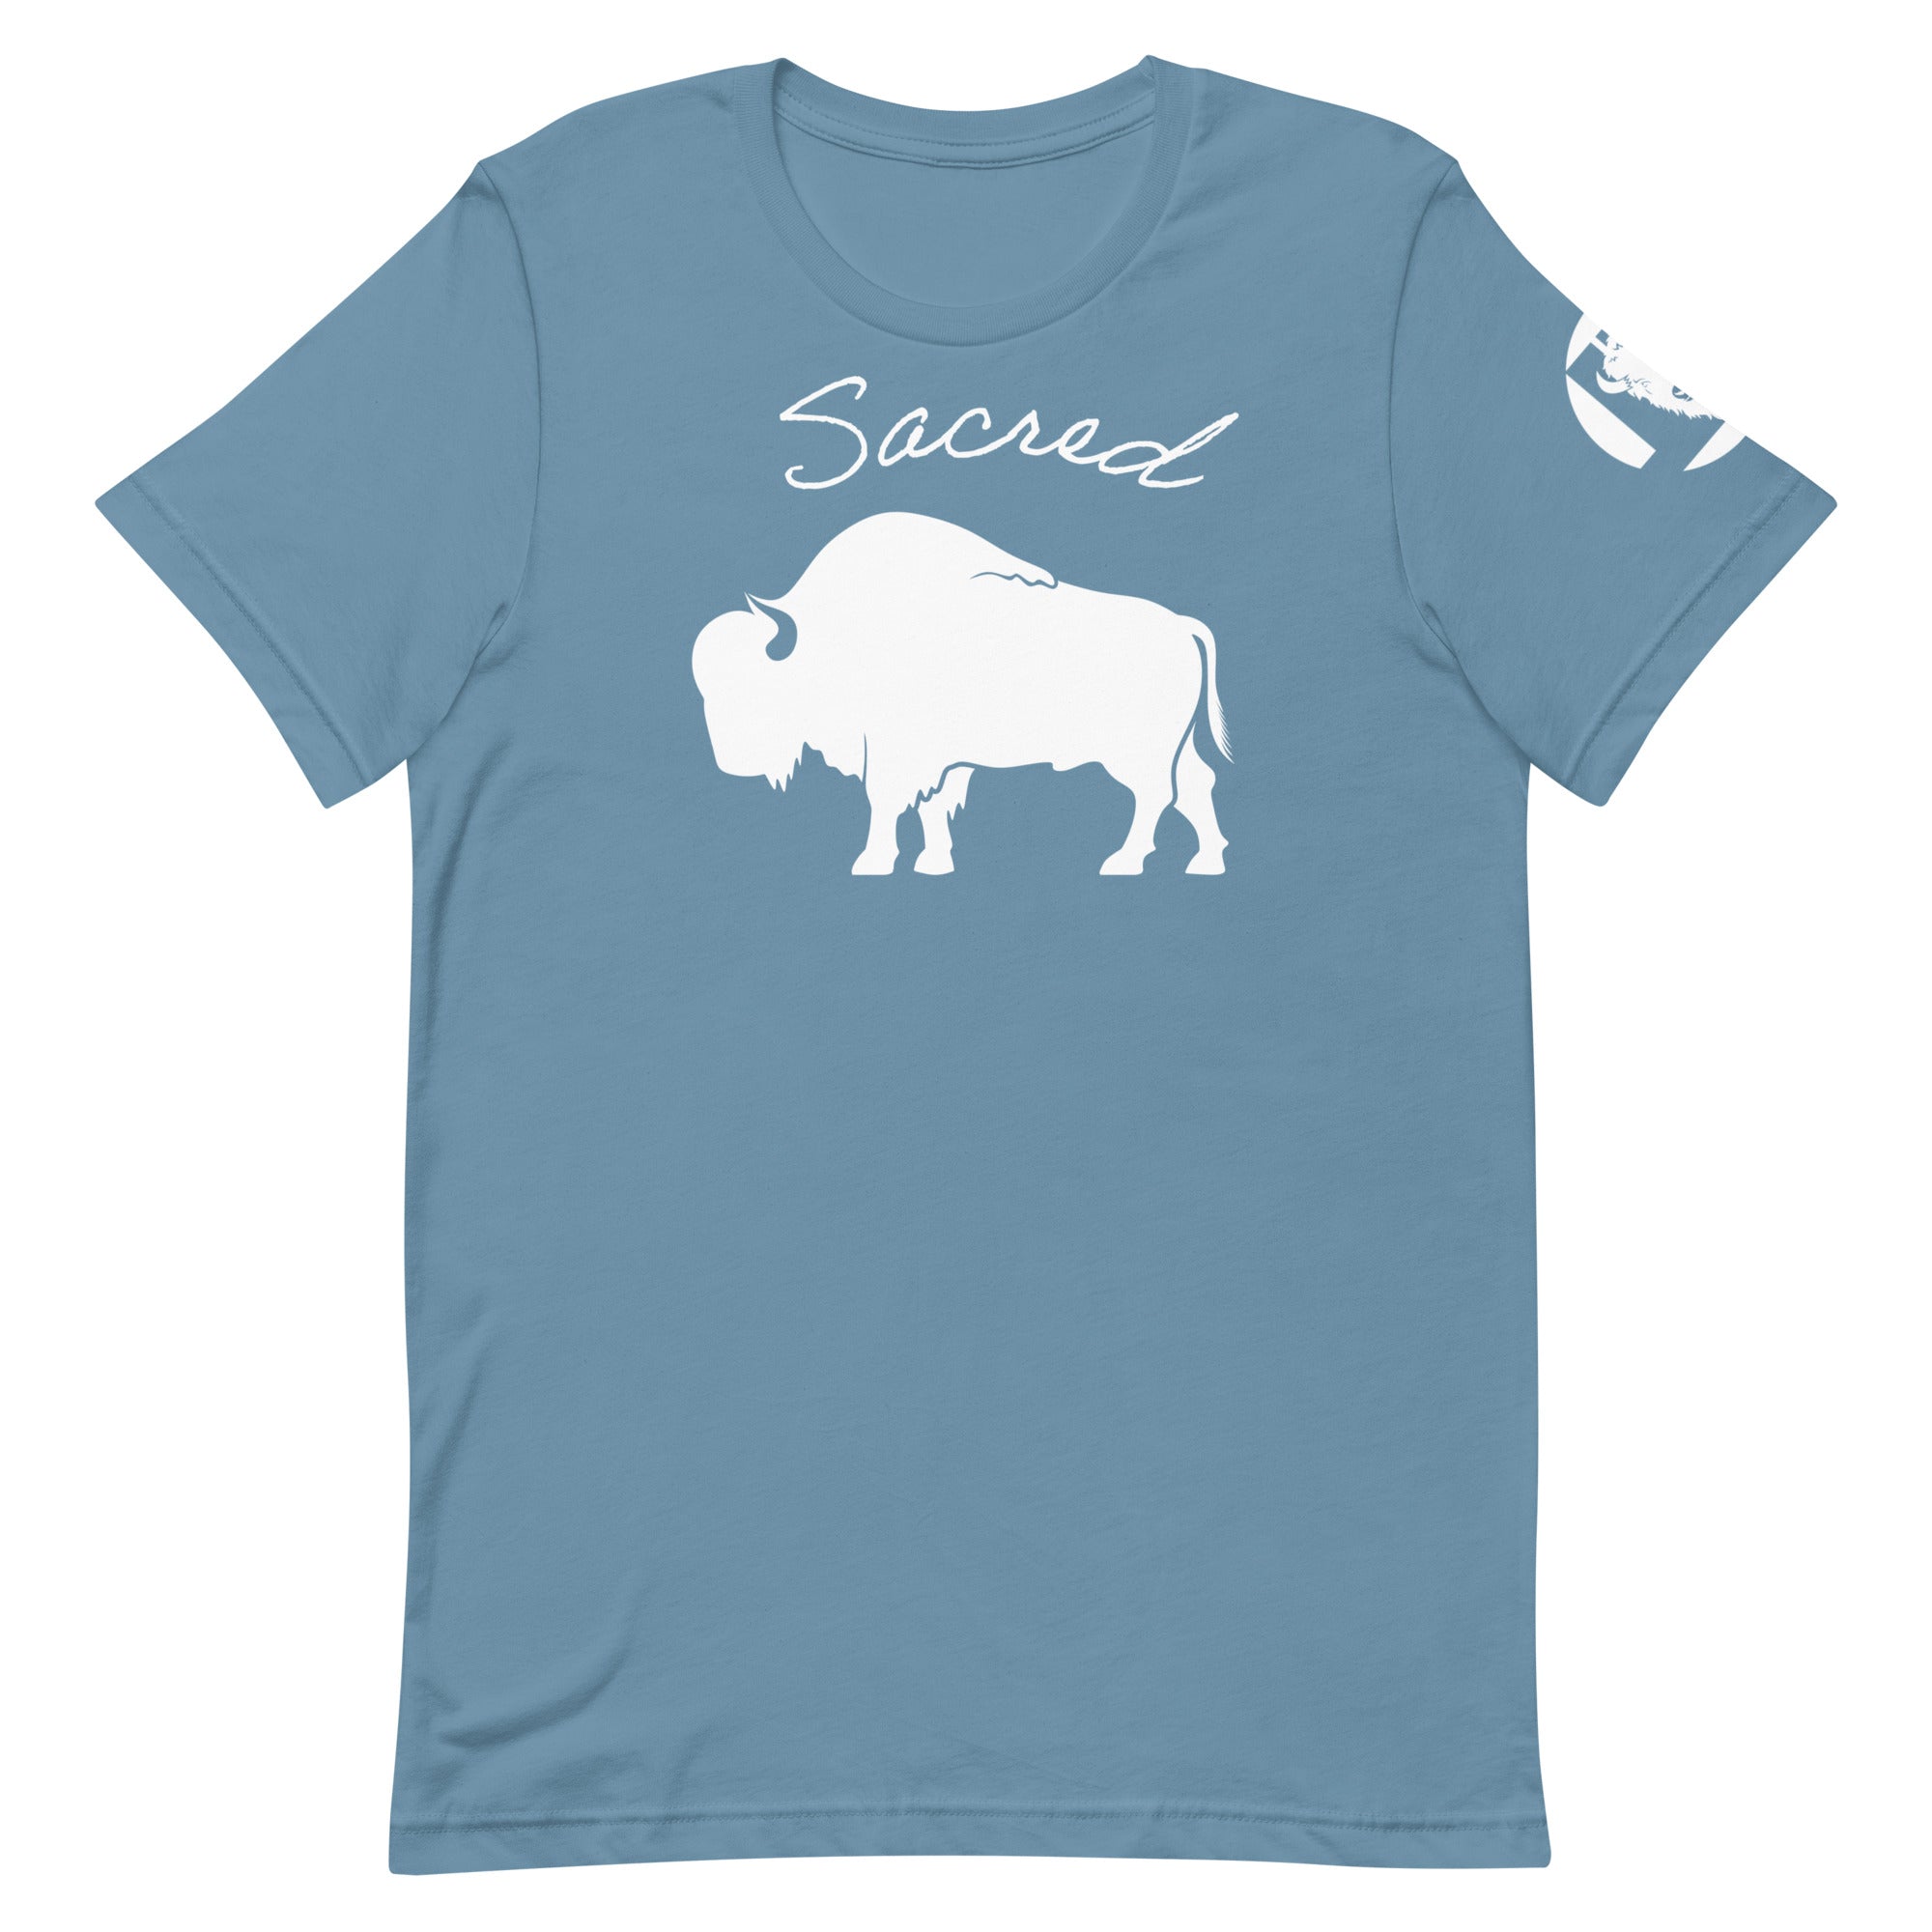 Sacred Unisex t-shirt